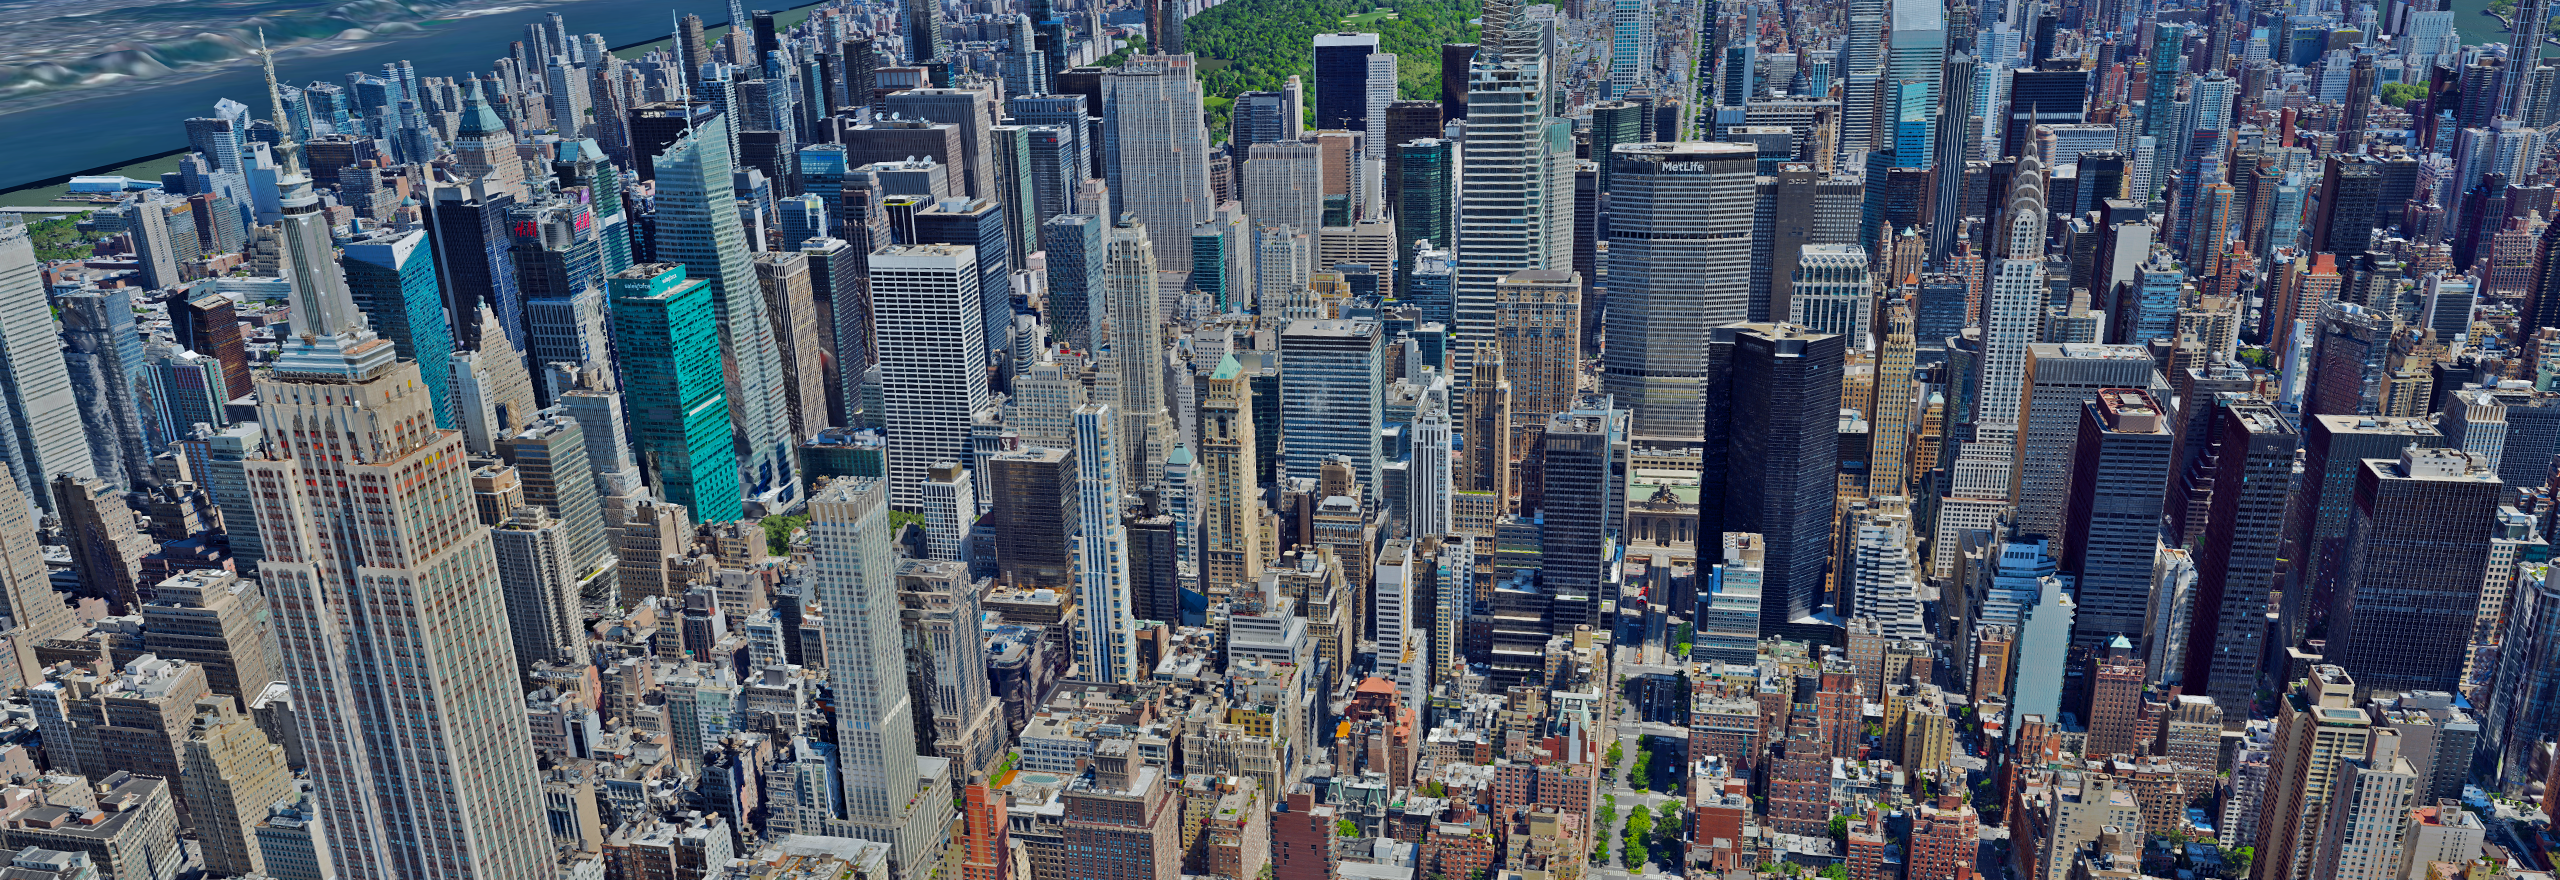 Sovrapposizione digitale di una grande città vista dall'alto